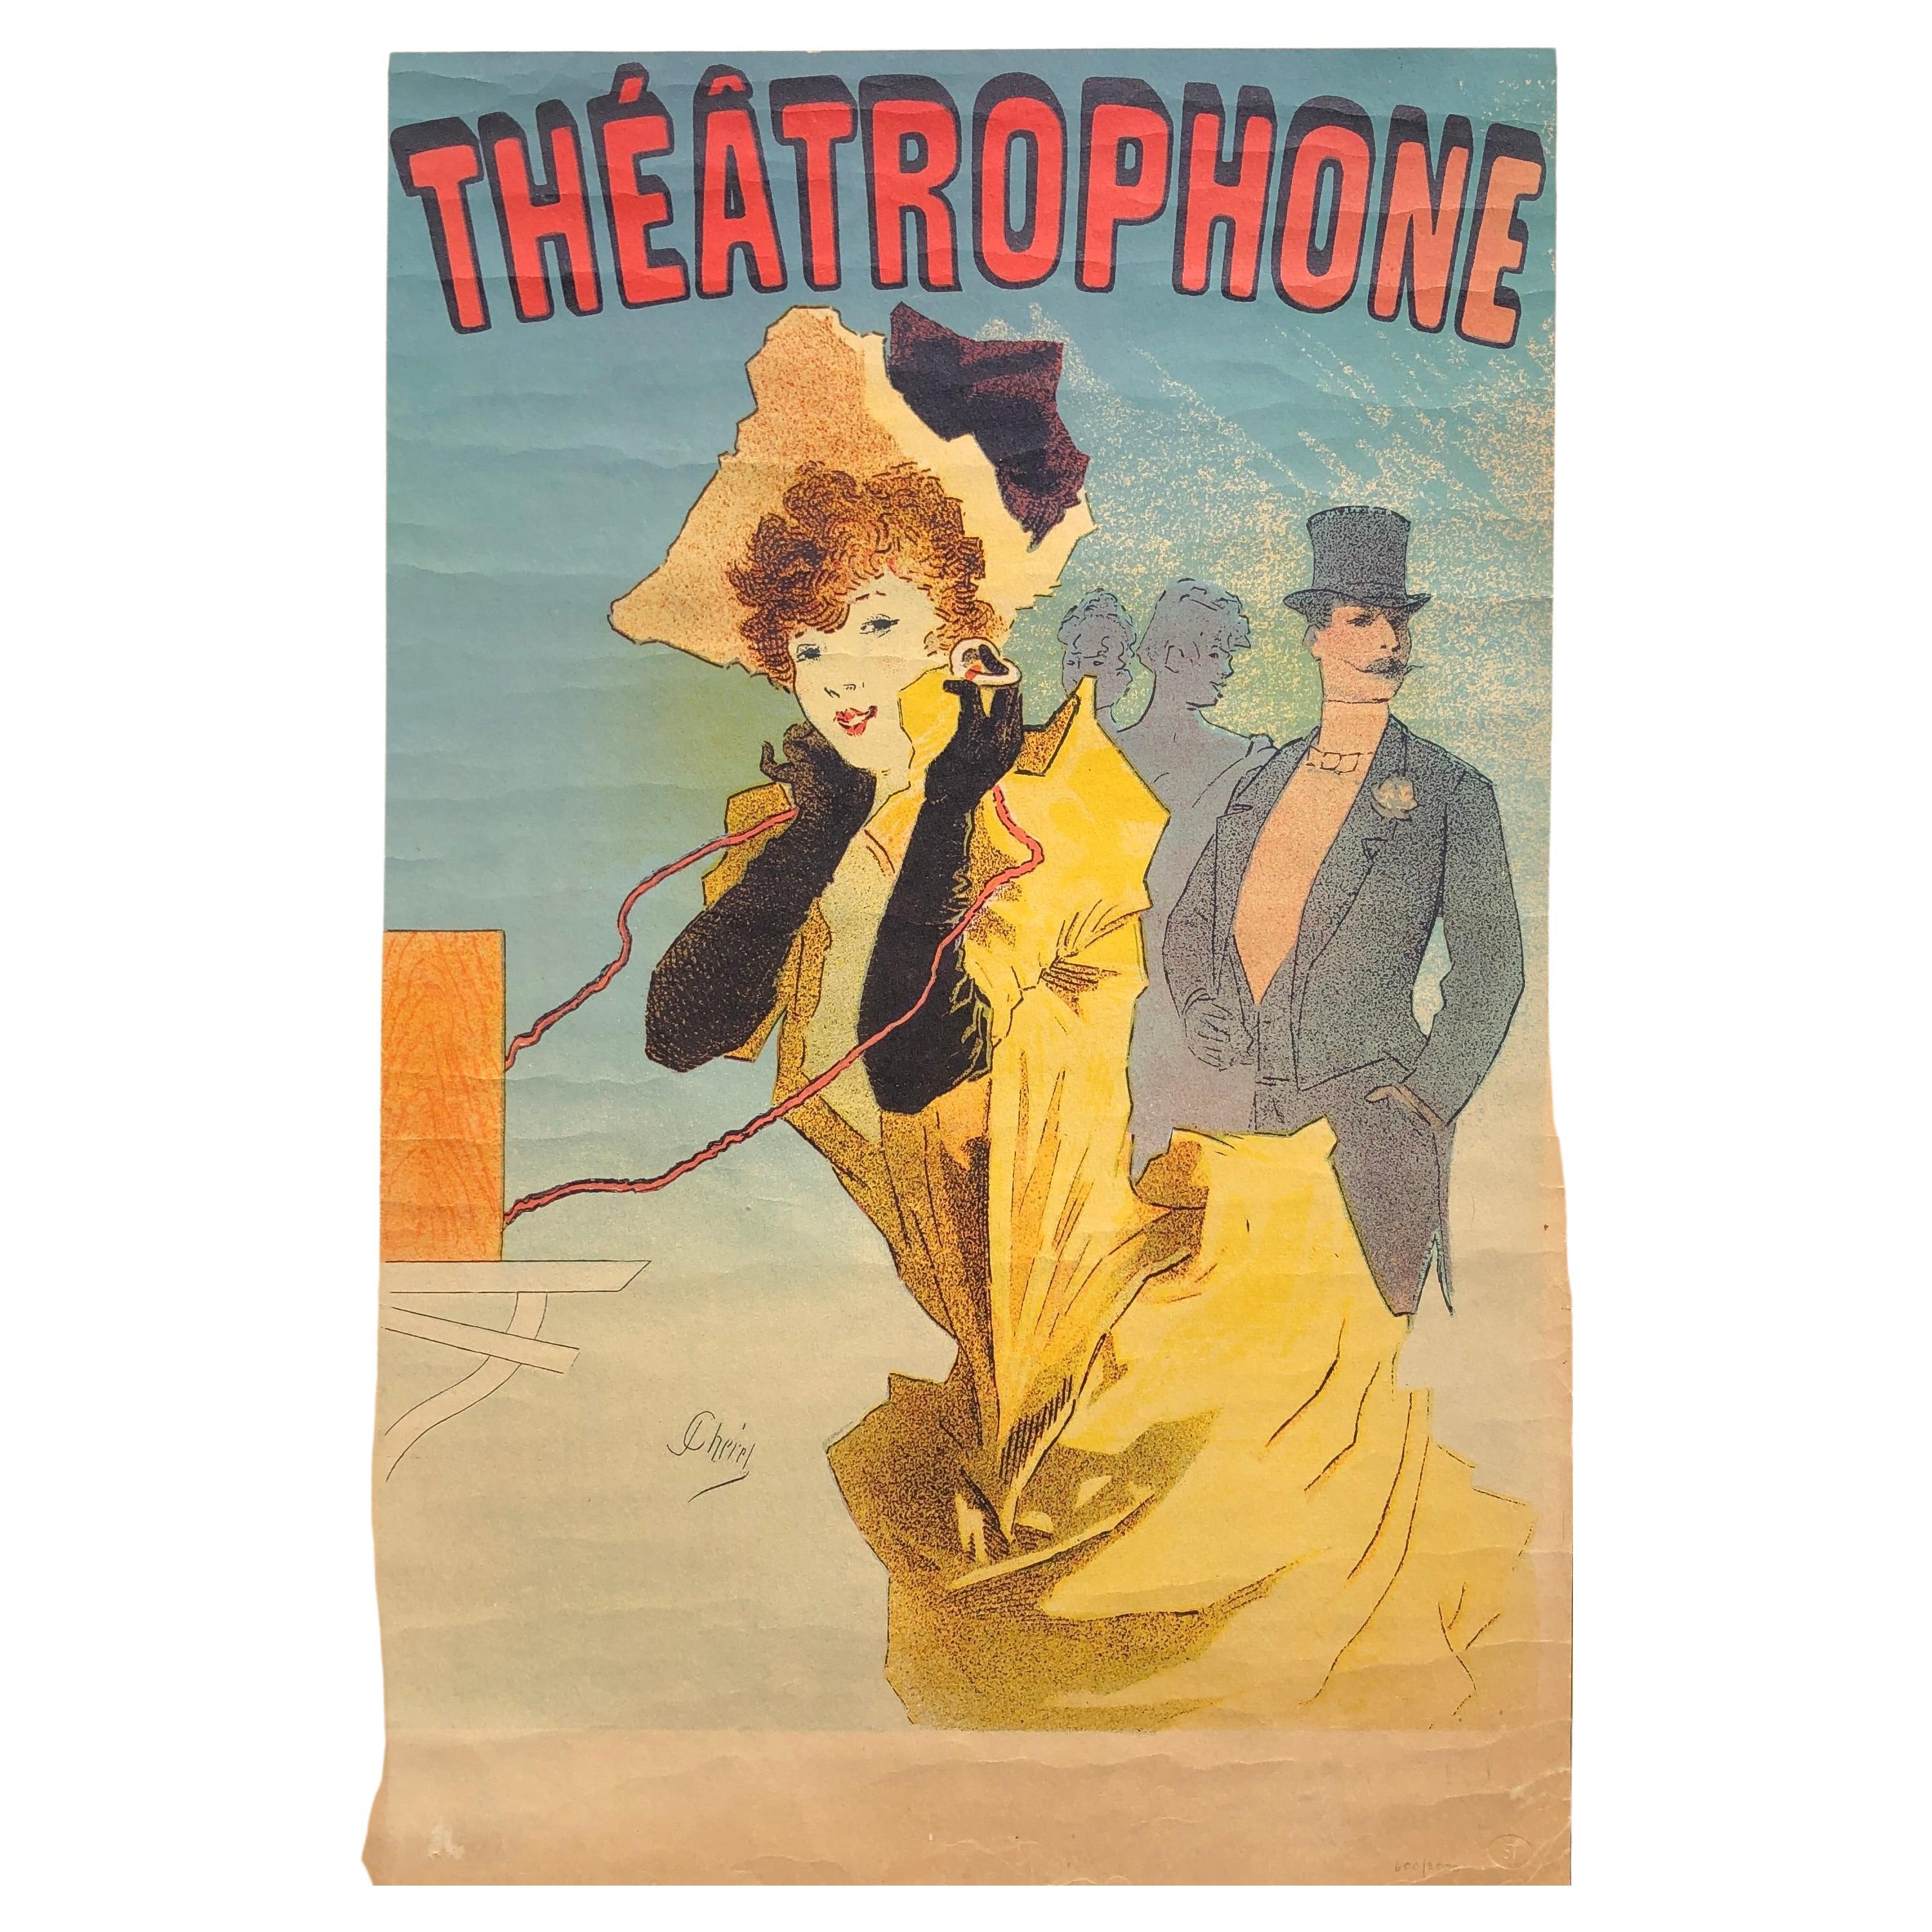 Le Théâtrophone - Vintage Art Nouveau Lithograph Poster by Jules Cheret